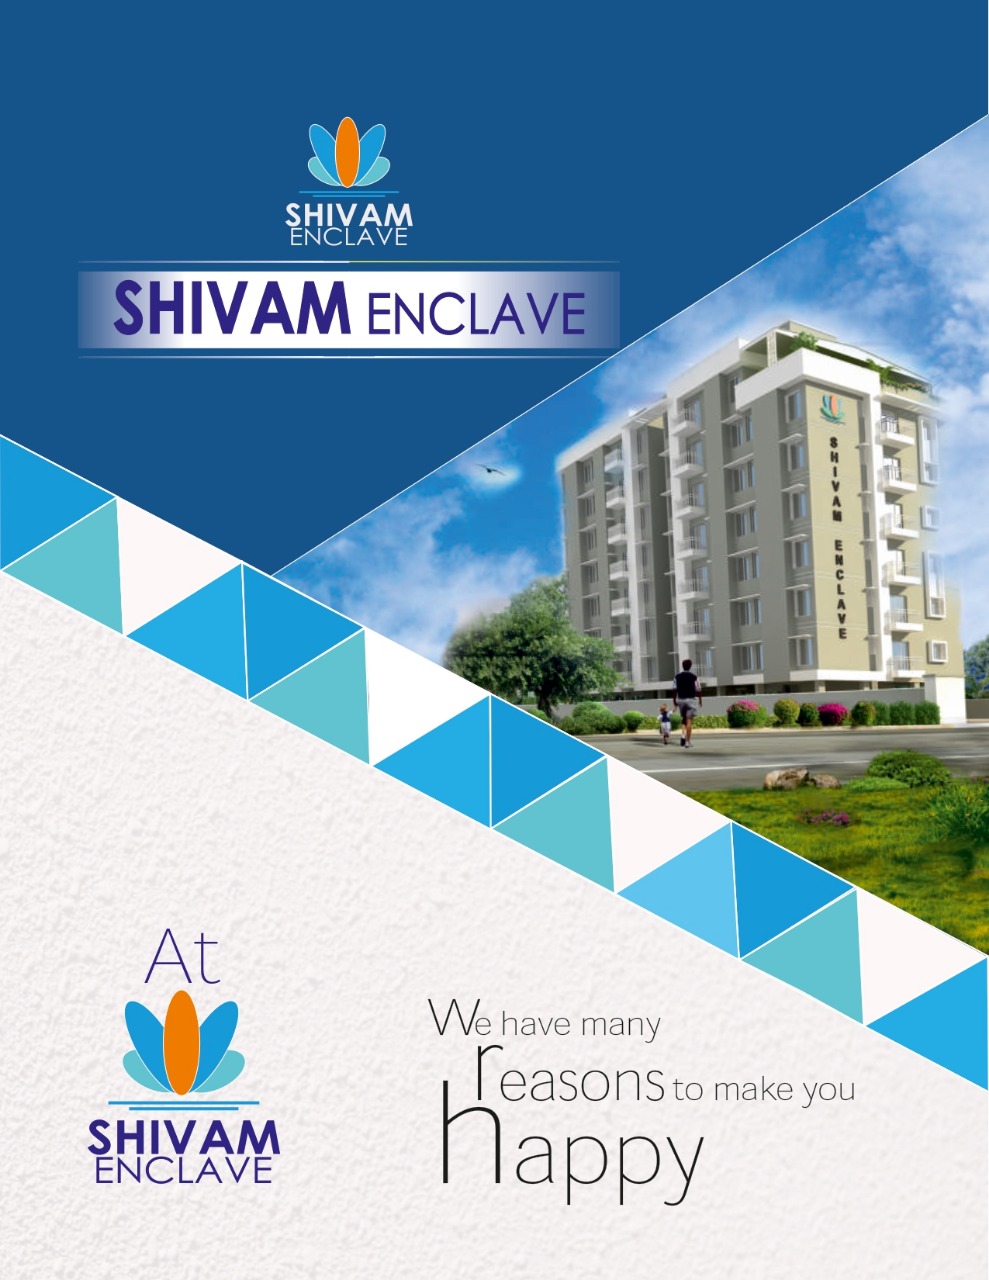 Shivam Enclave